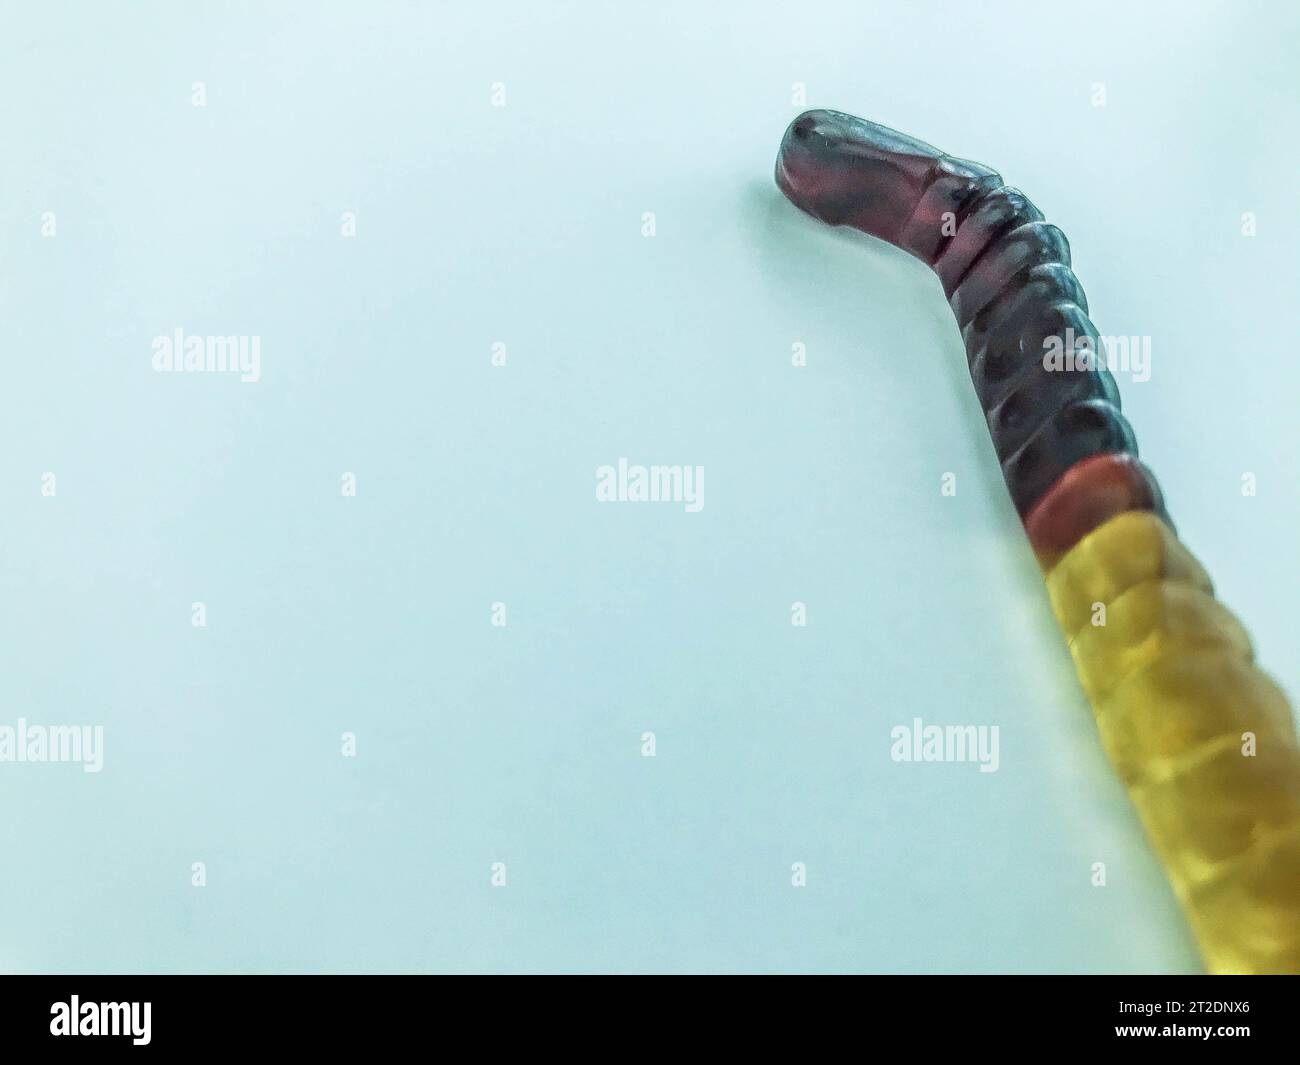 Gummiwürmer liegen auf einem weißen, blau matten Hintergrund. Helle, mundtränende gelatinöse Würmer von bräunlich-gelber Farbe. Köstliche Süßigkeiten. Behandlung ch Stockfoto